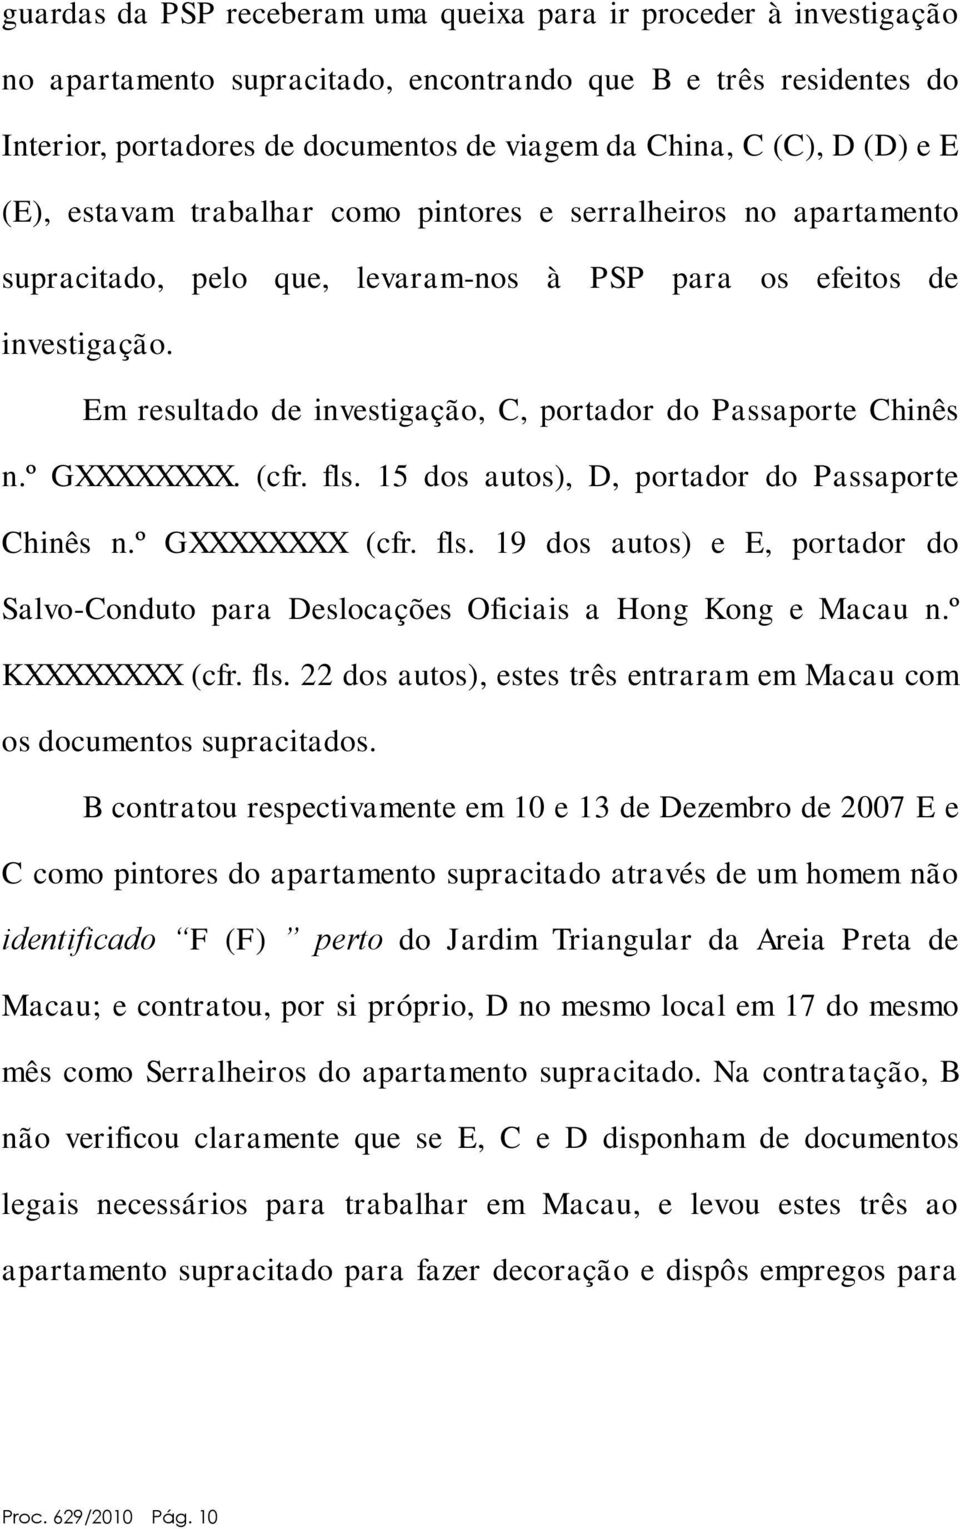 Em resultado de investigação, C, portador do Passaporte Chinês n.º GXXXXXXXX. (cfr. fls. 15 dos autos), D, portador do Passaporte Chinês n.º GXXXXXXXX (cfr. fls. 19 dos autos) e E, portador do Salvo-Conduto para Deslocações Oficiais a Hong Kong e Macau n.